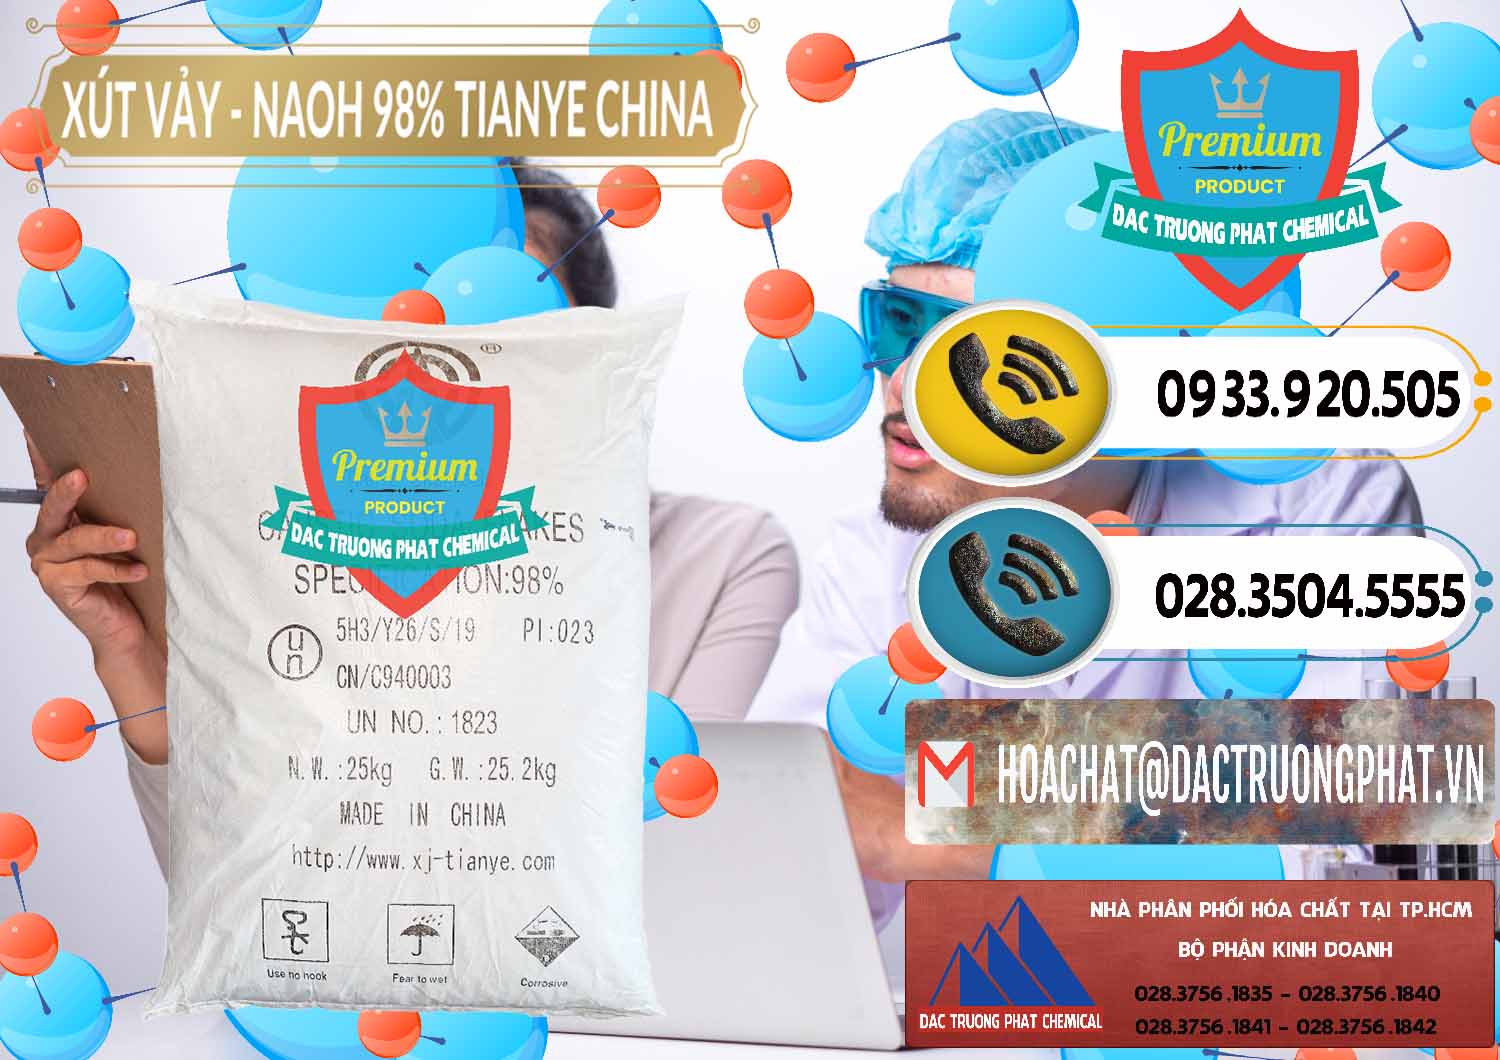 Đơn vị chuyên bán và phân phối Xút Vảy - NaOH Vảy 98% Tianye Trung Quốc China - 0177 - Đơn vị chuyên cung cấp và kinh doanh hóa chất tại TP.HCM - hoachatdetnhuom.vn